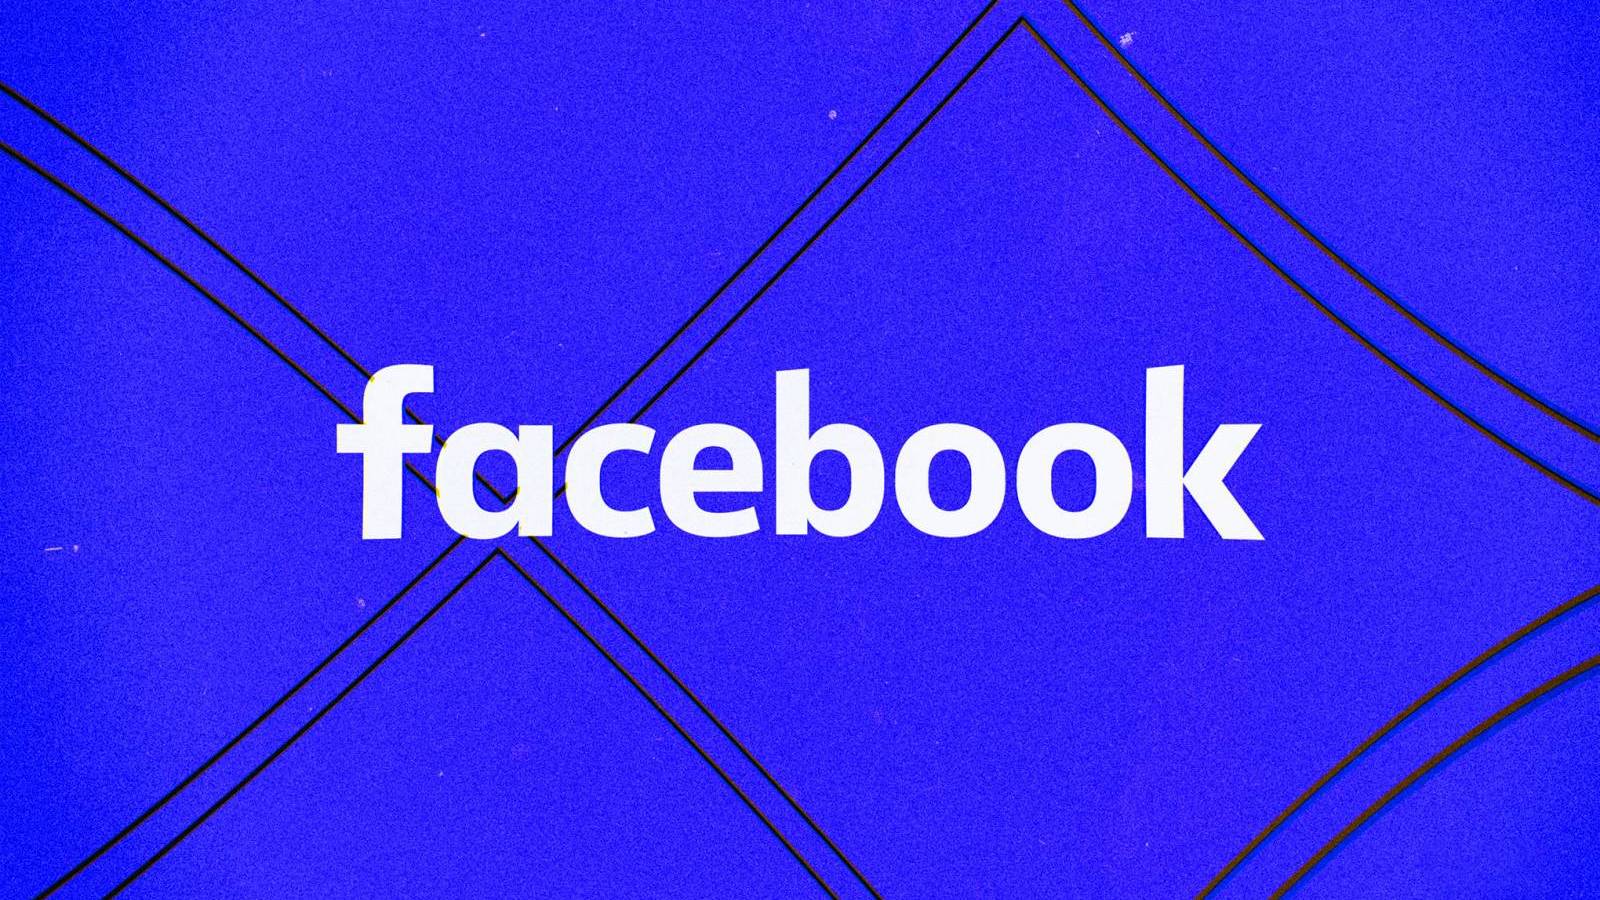 Facebook si-a Actualizat Aplicatia, ce Noutati Aduce Versiunea pentru Telefoane si Tablete